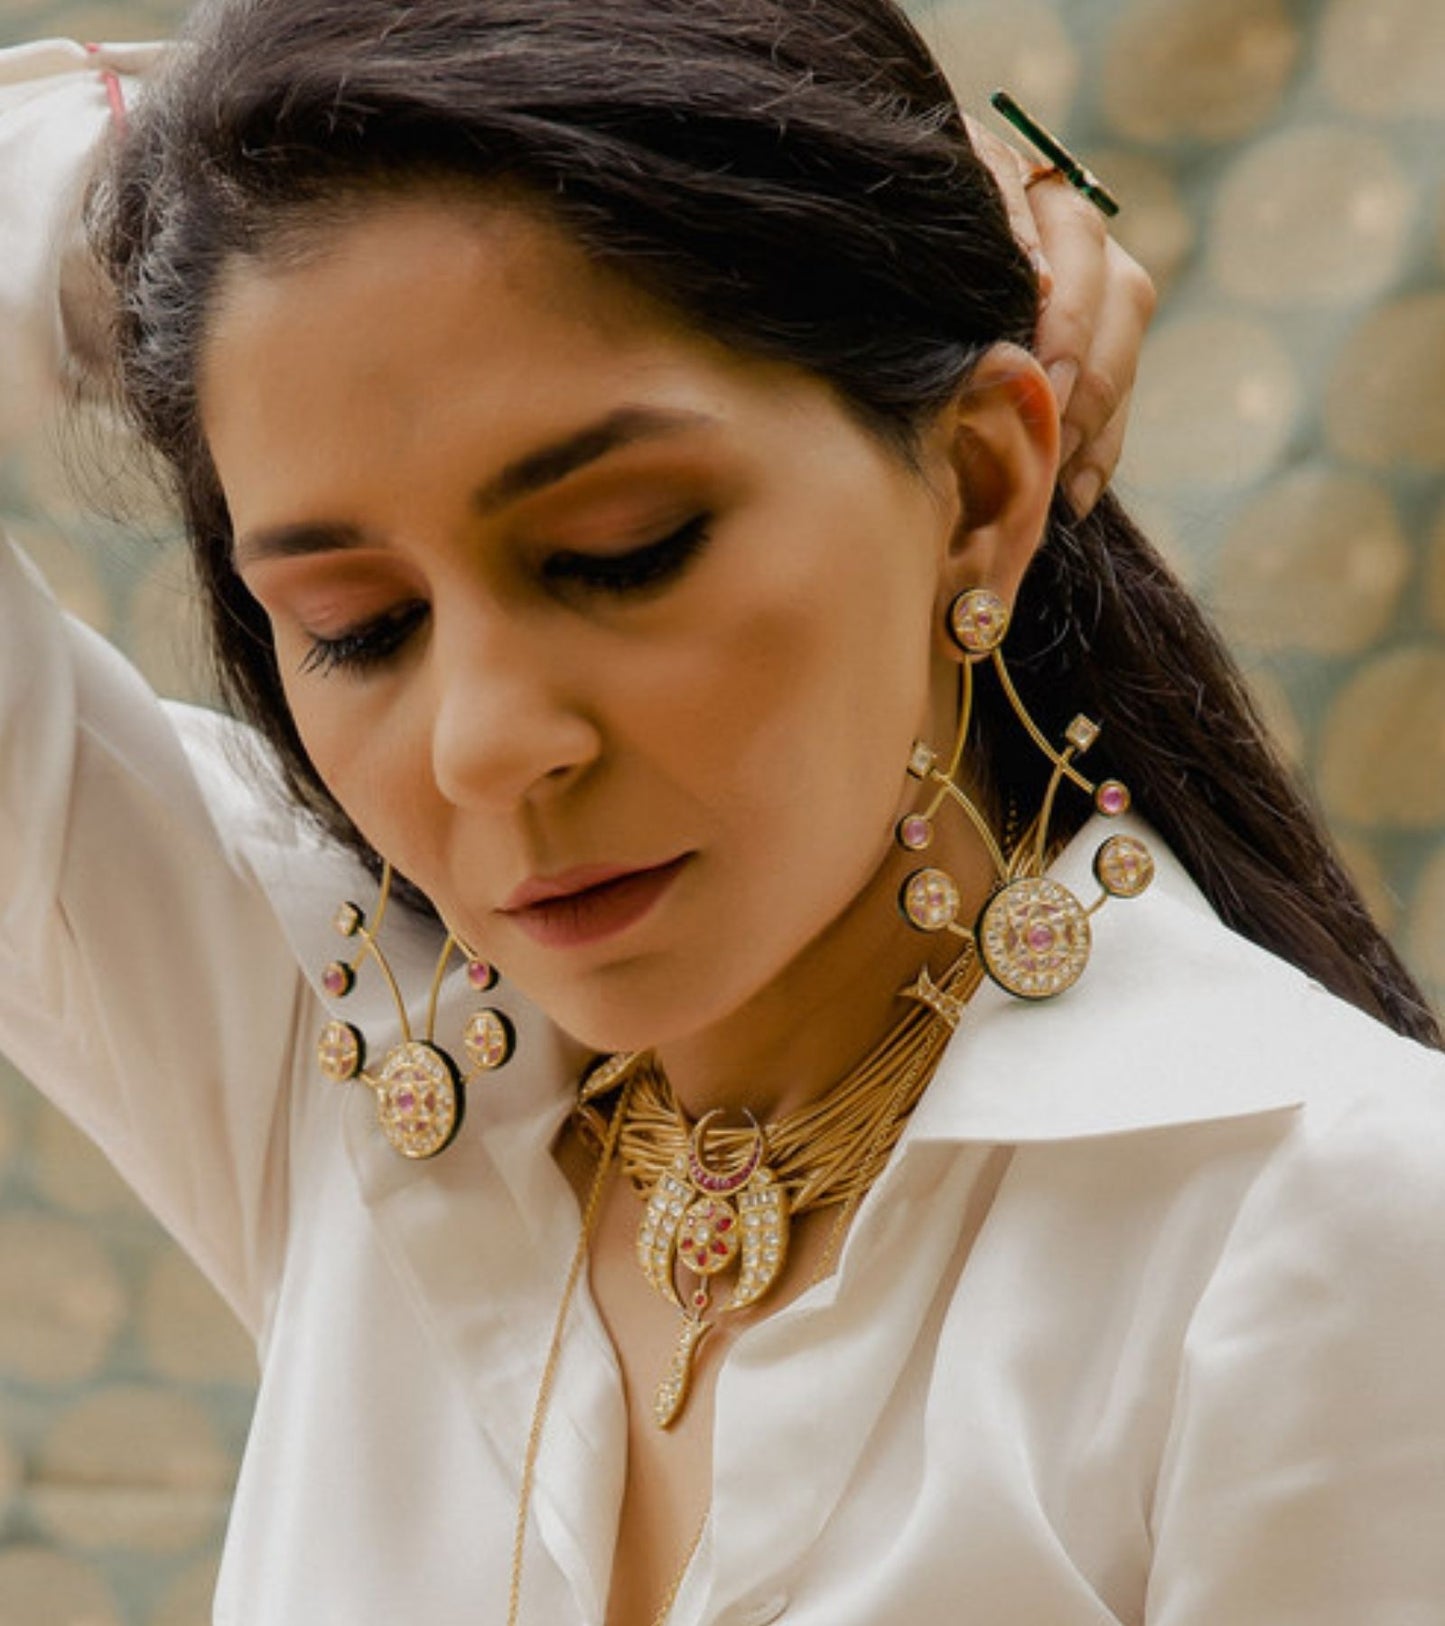 The Sasha Chandelier Earrings in Gold-Festive Jewelry